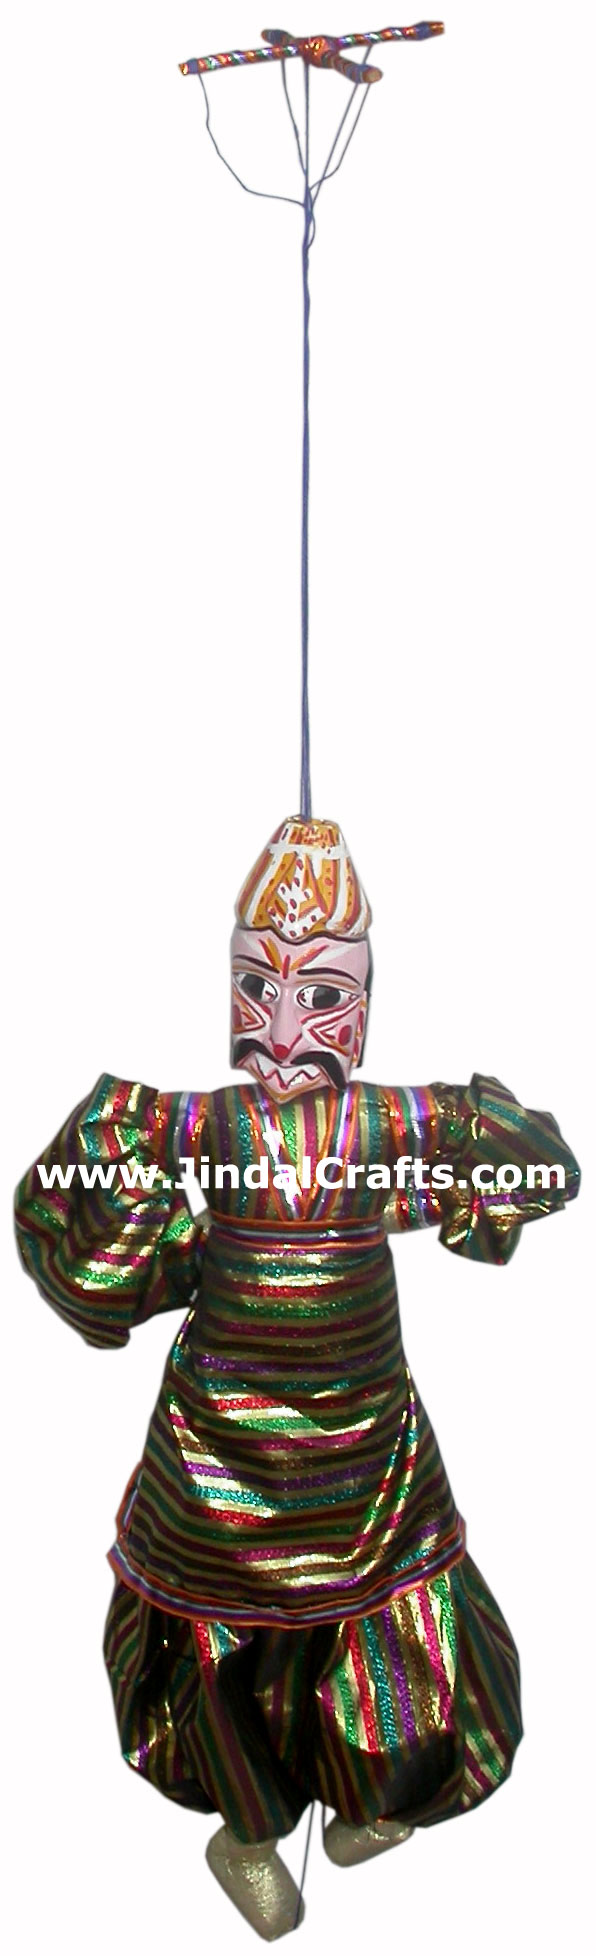 Magician Puppet Doll Indian Art Craft Handicraft Traditional Figure